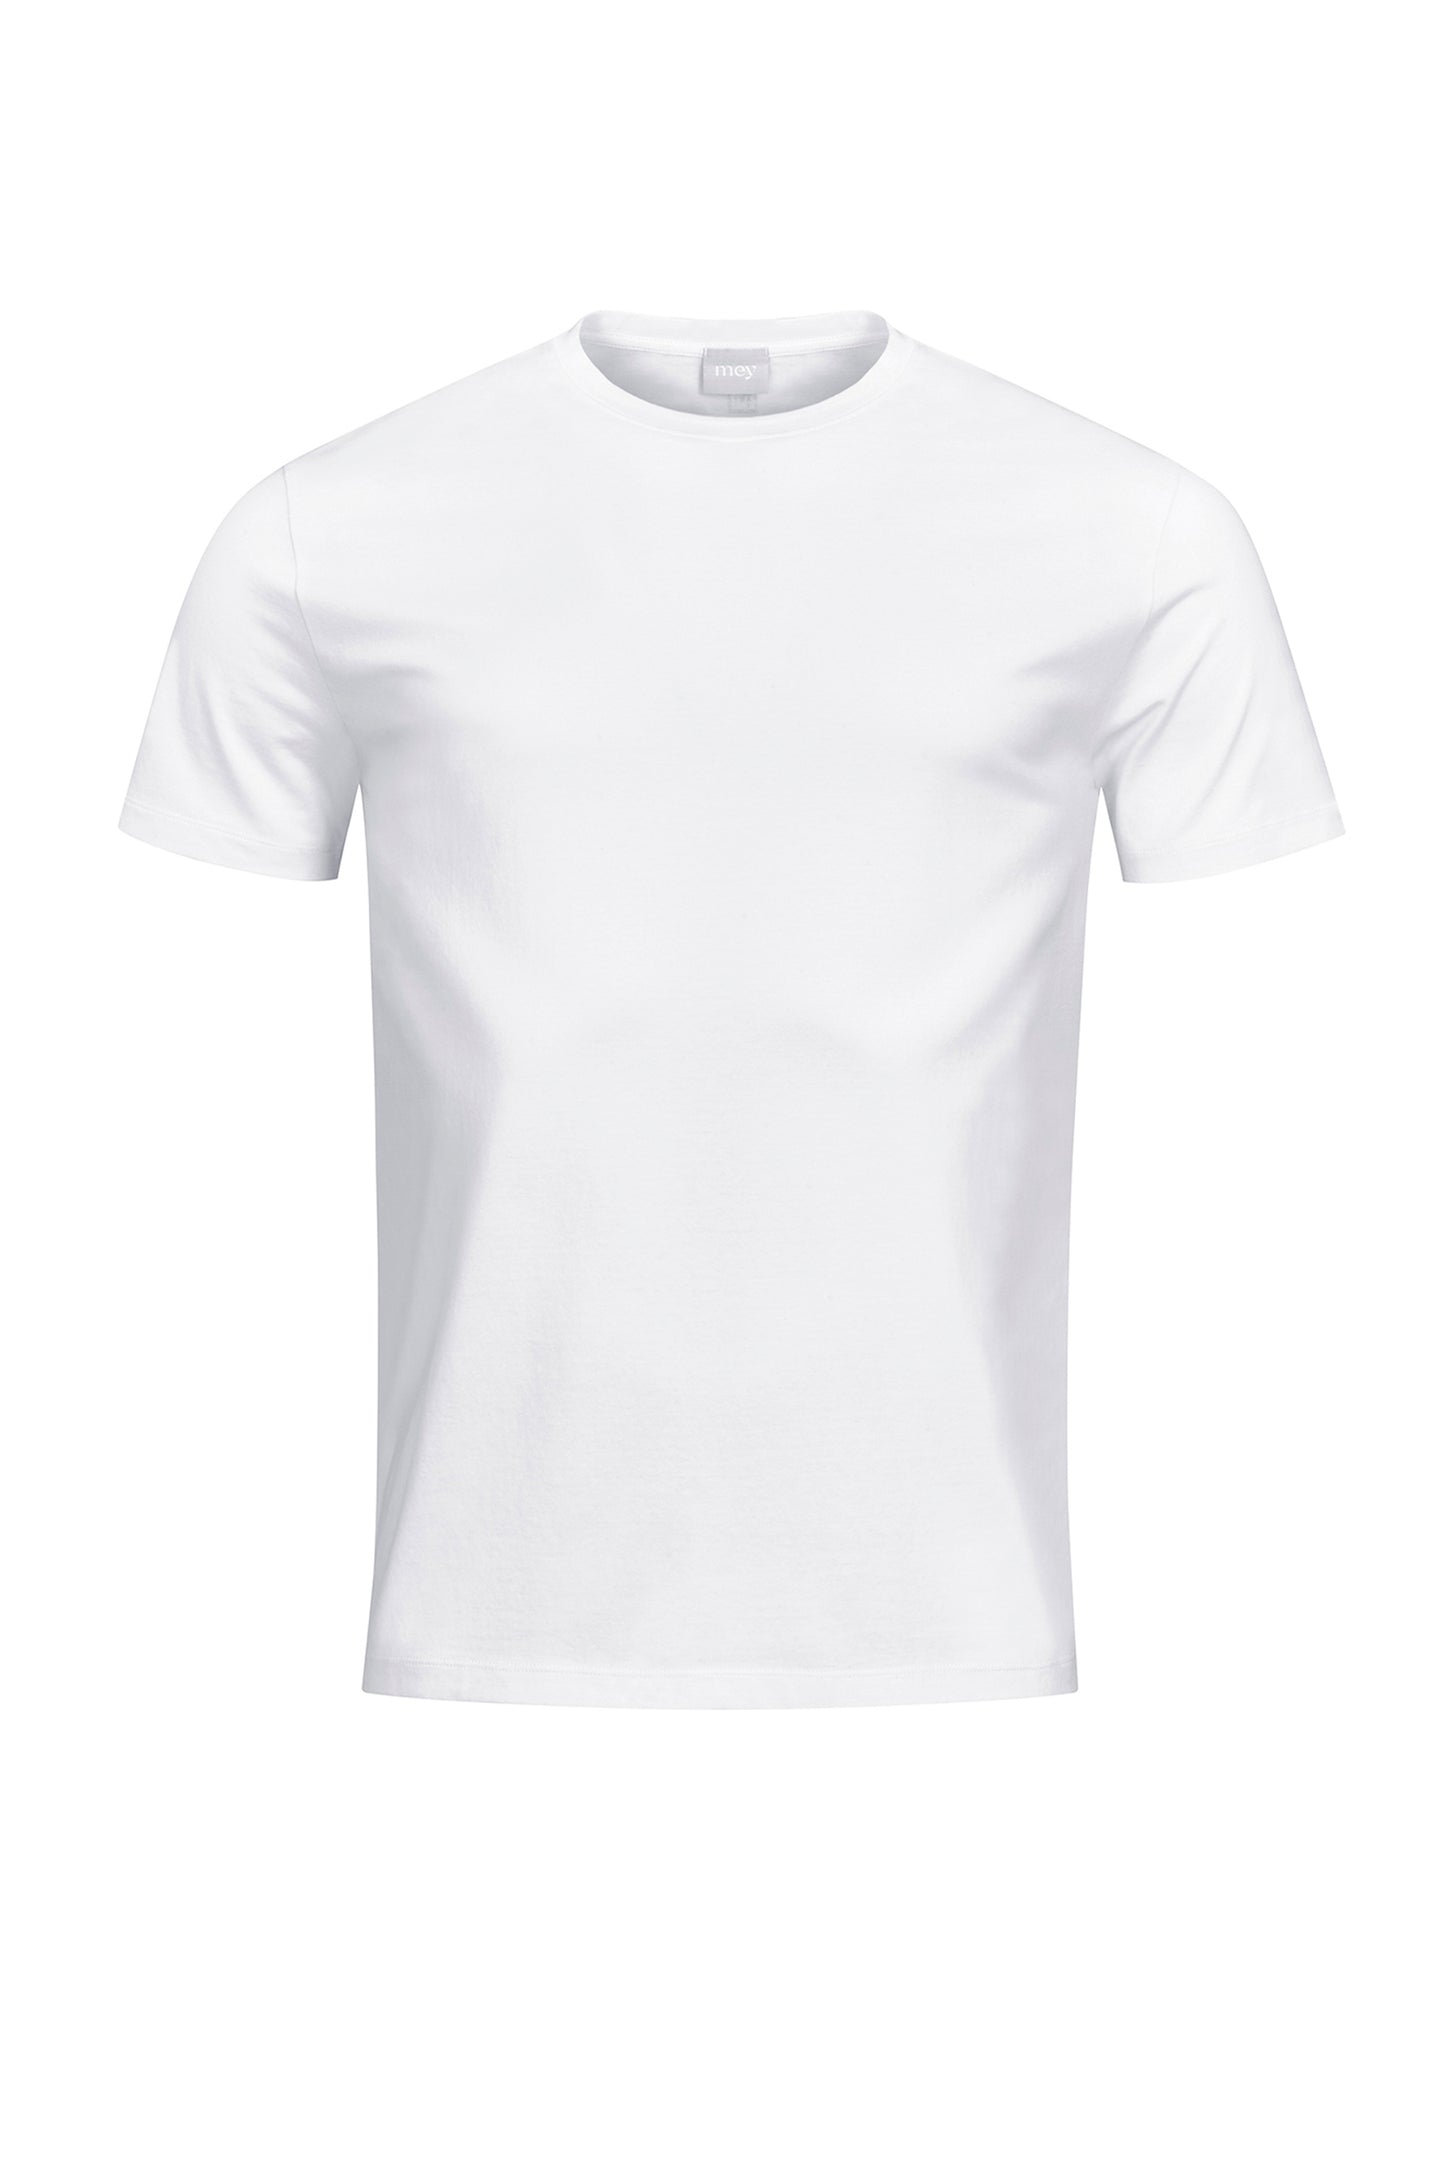 T-Shirt (Weiss)